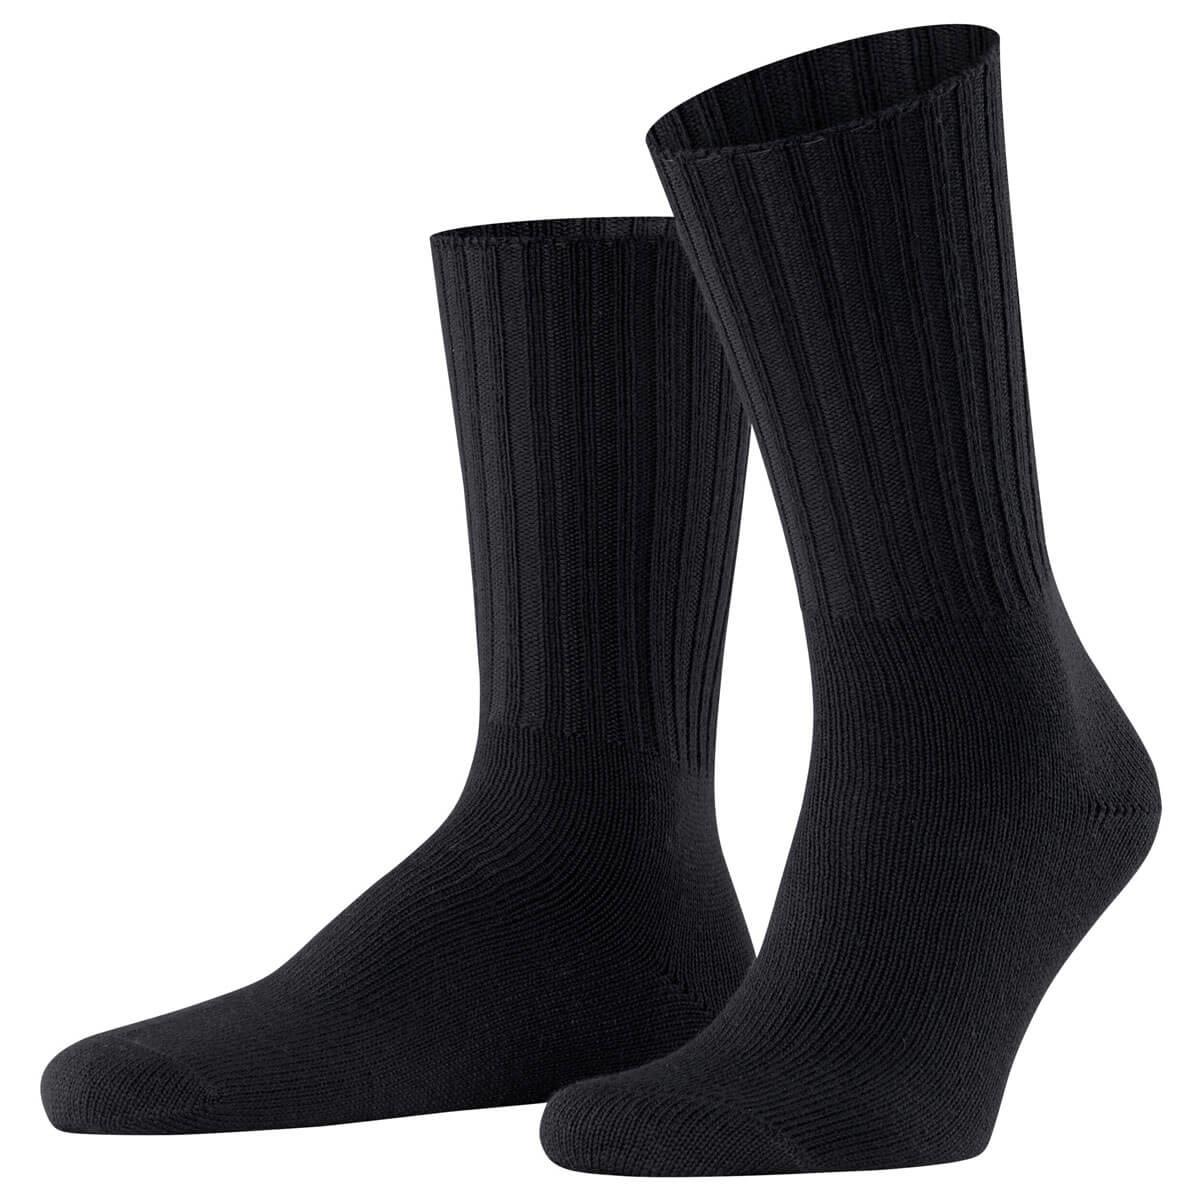 Nelson Socks - Men's